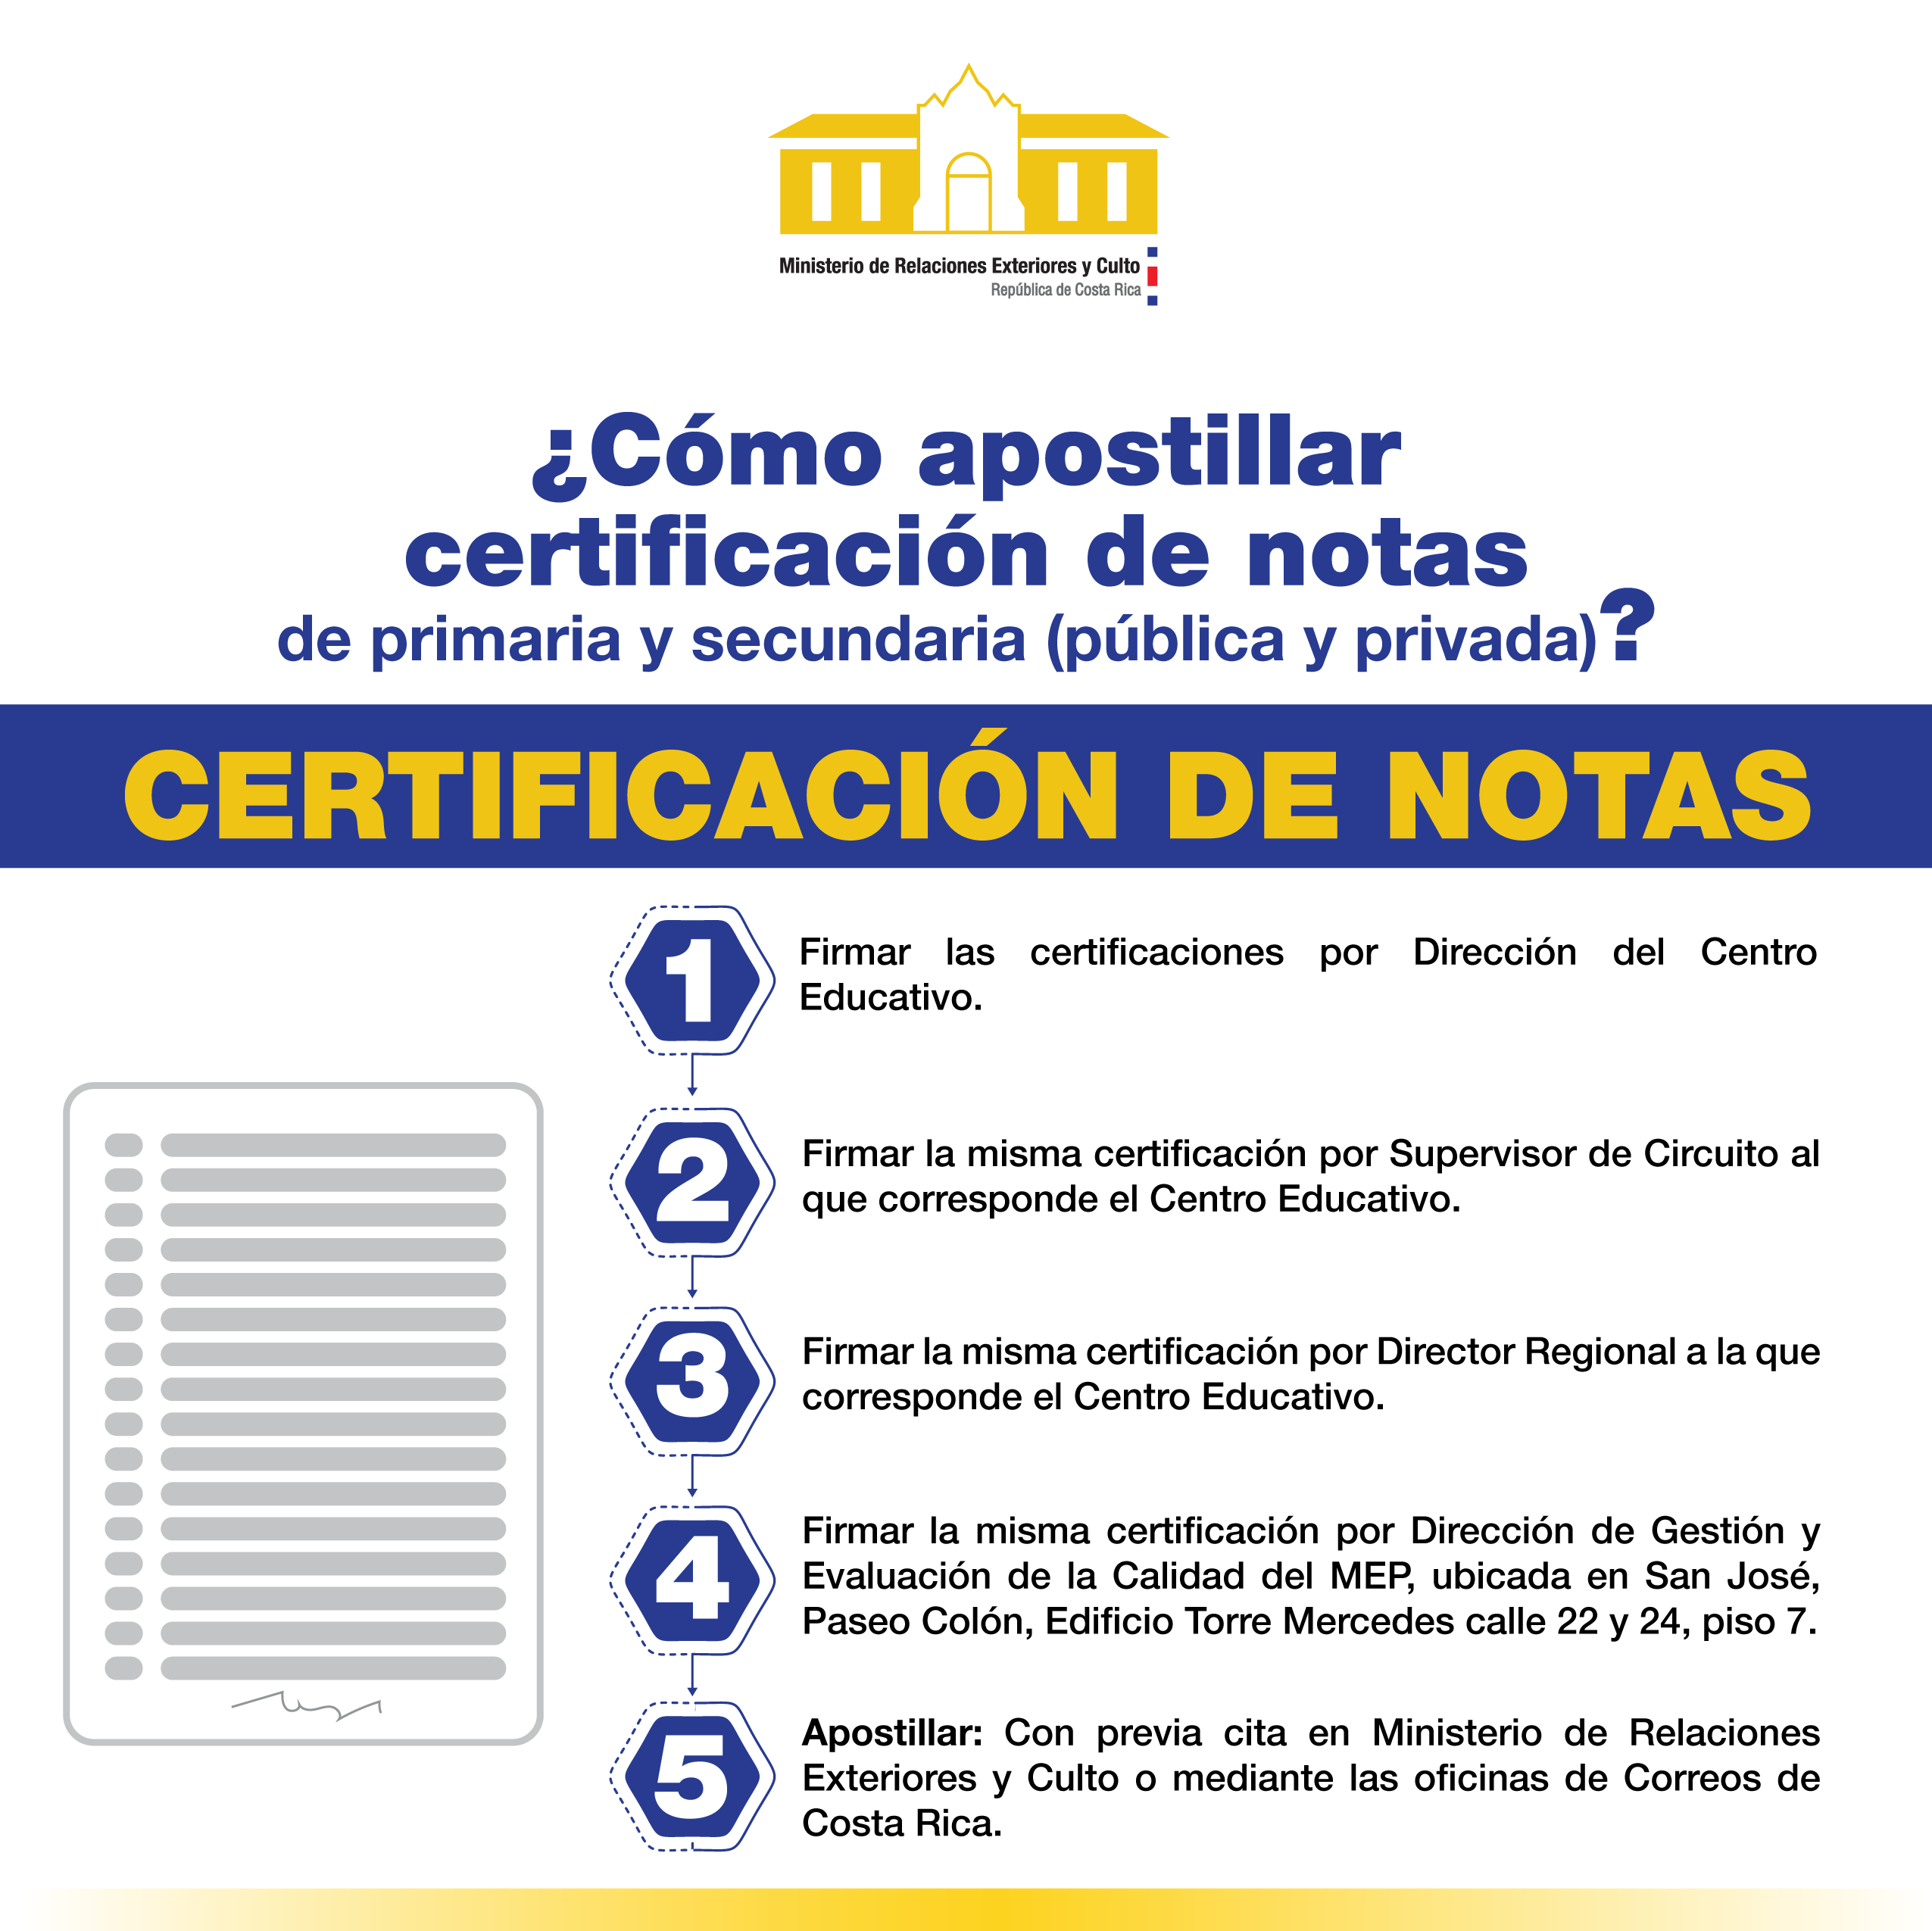 Infograma sobre como apostillar las certificaciones de notas de primaria y secundaria tanto público como privado